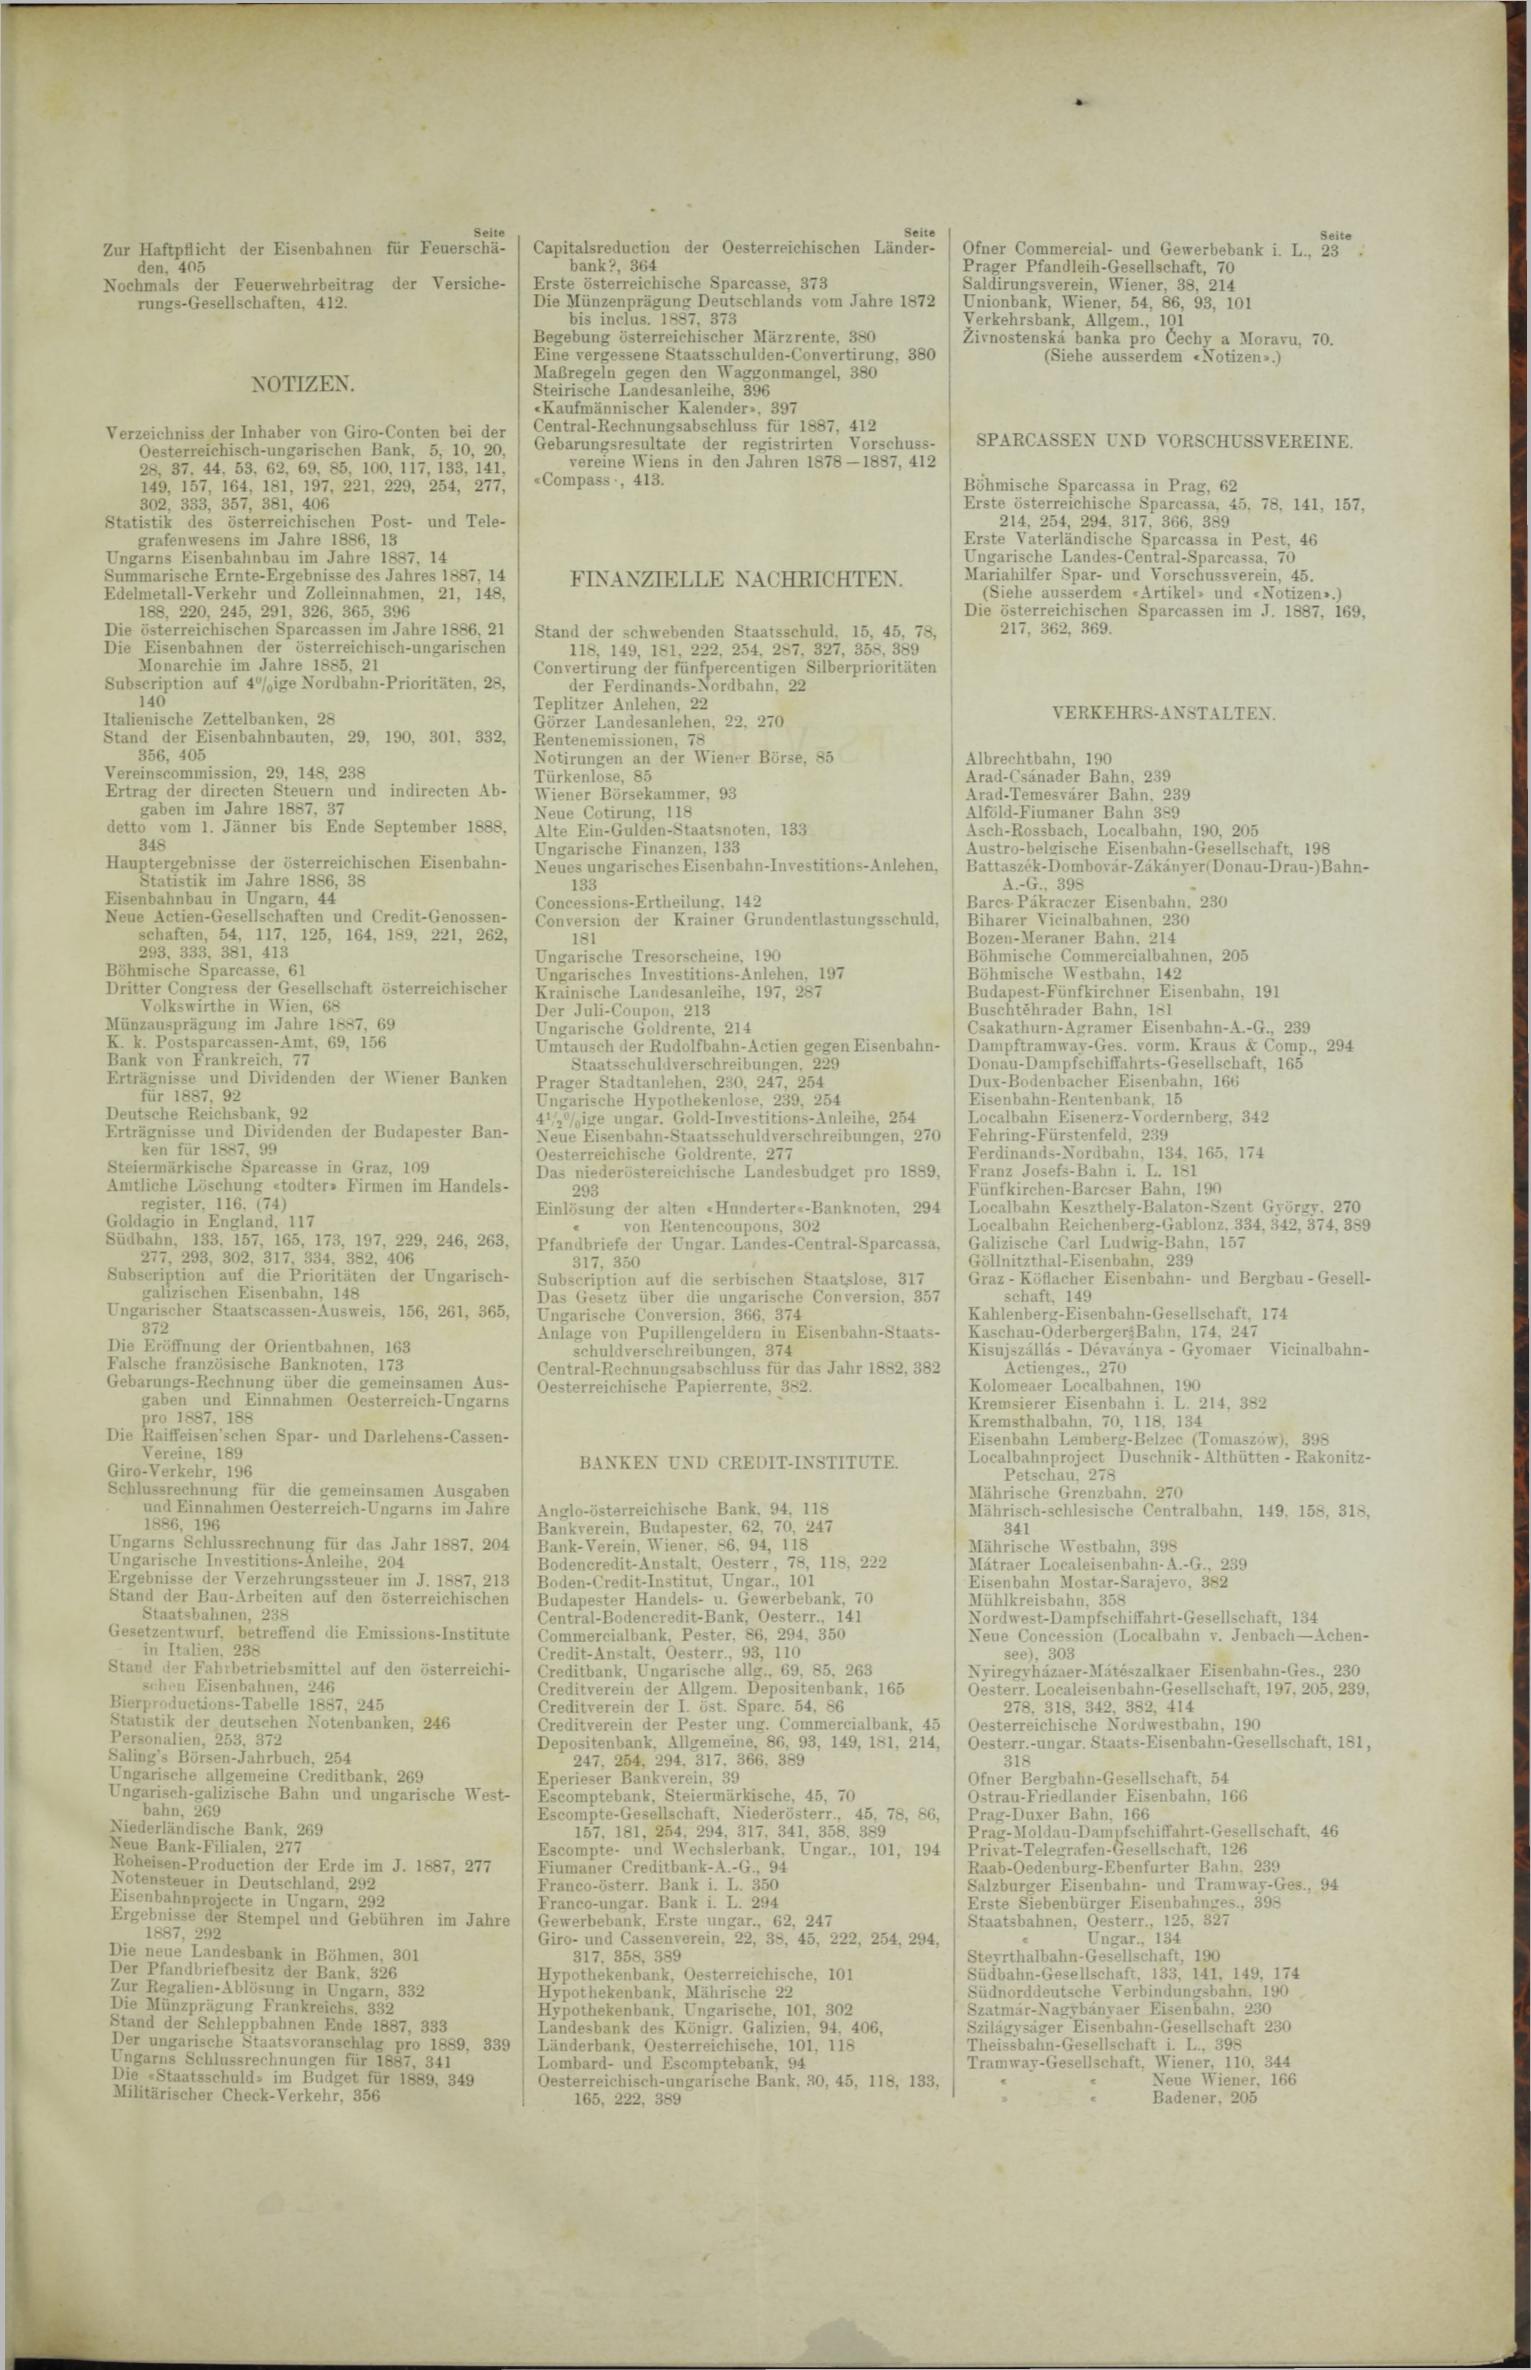 Der Tresor 05.01.1888 - Seite 11